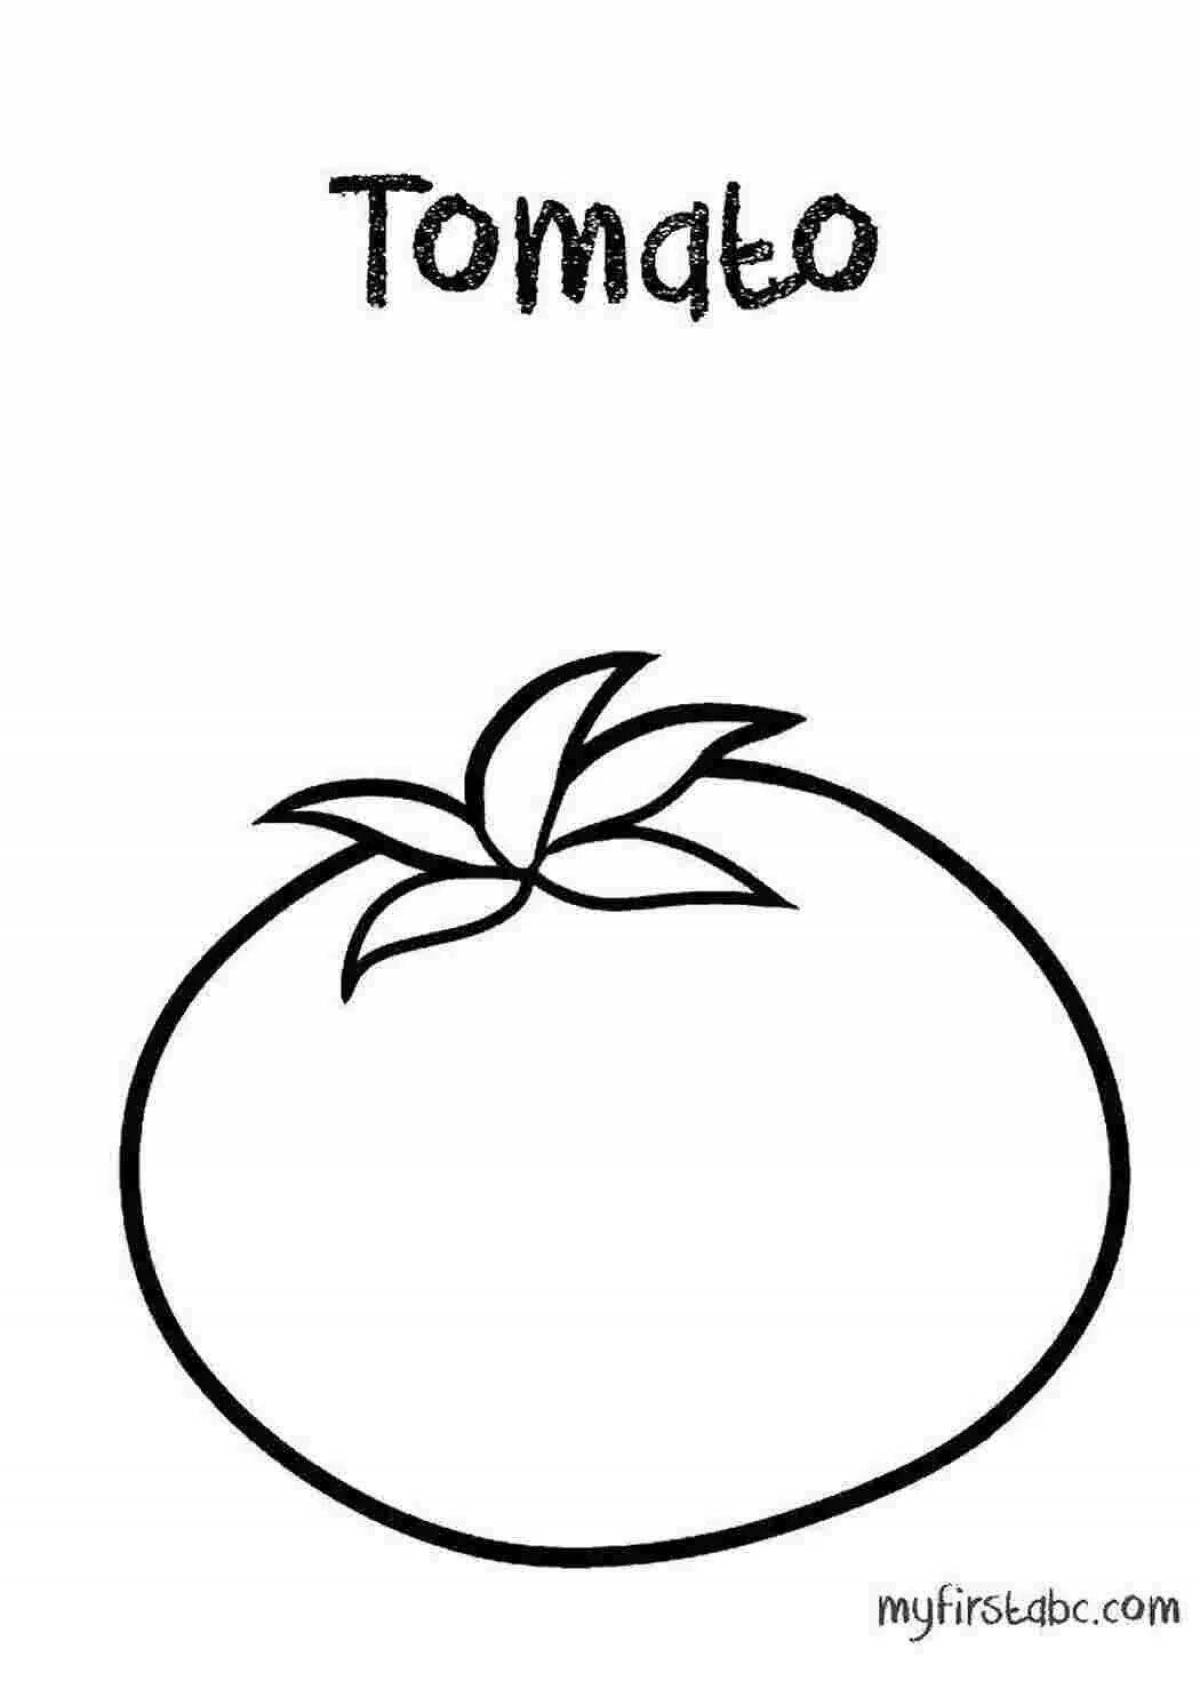 Творческая раскраска помидоров для детей 3-4 лет